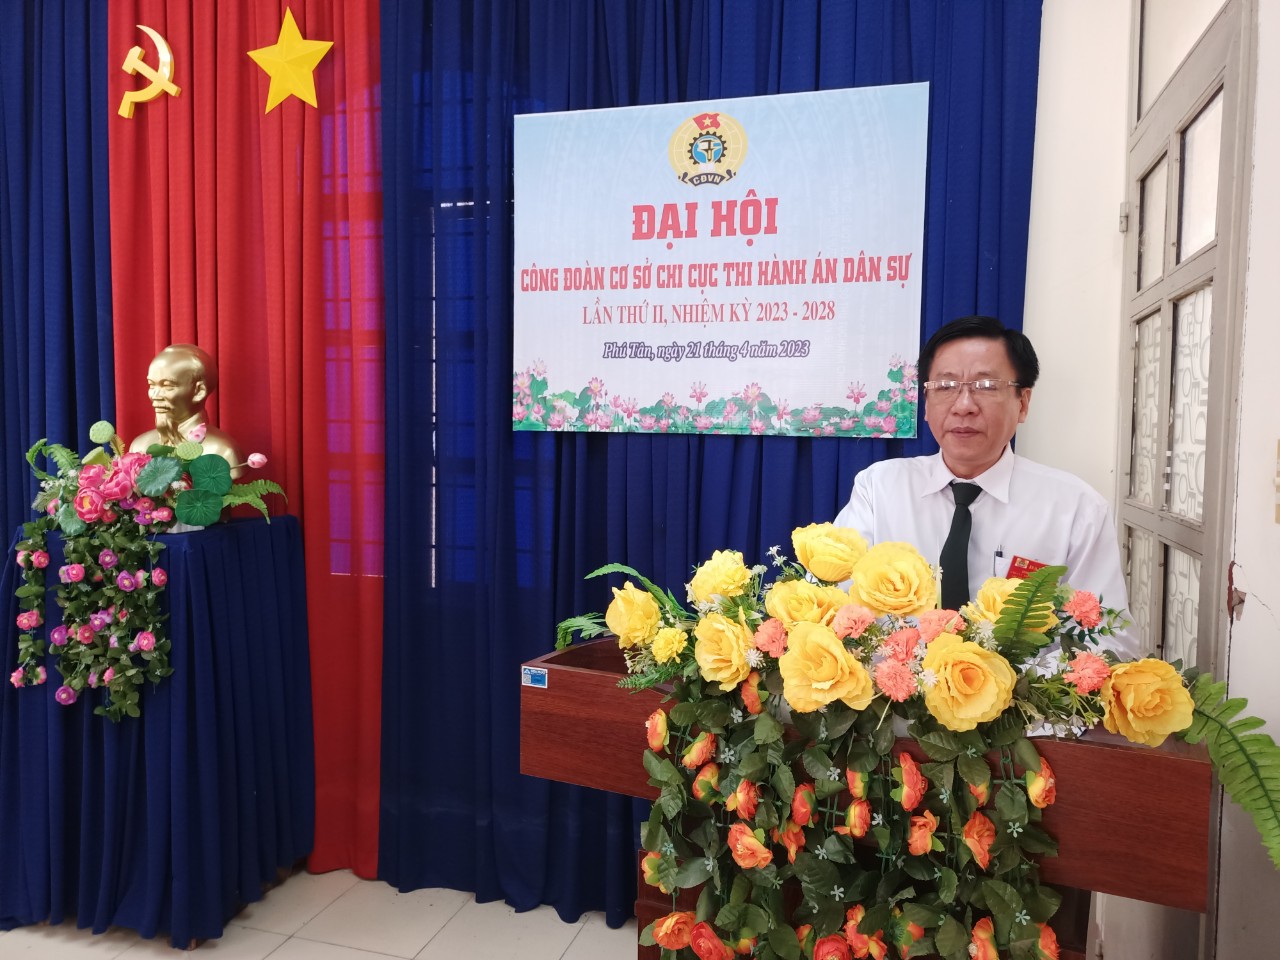 Chi cục Thi hành án dân sự huyện Phú Tân tổ chức thành công Đại hội Công đoàn cơ sở